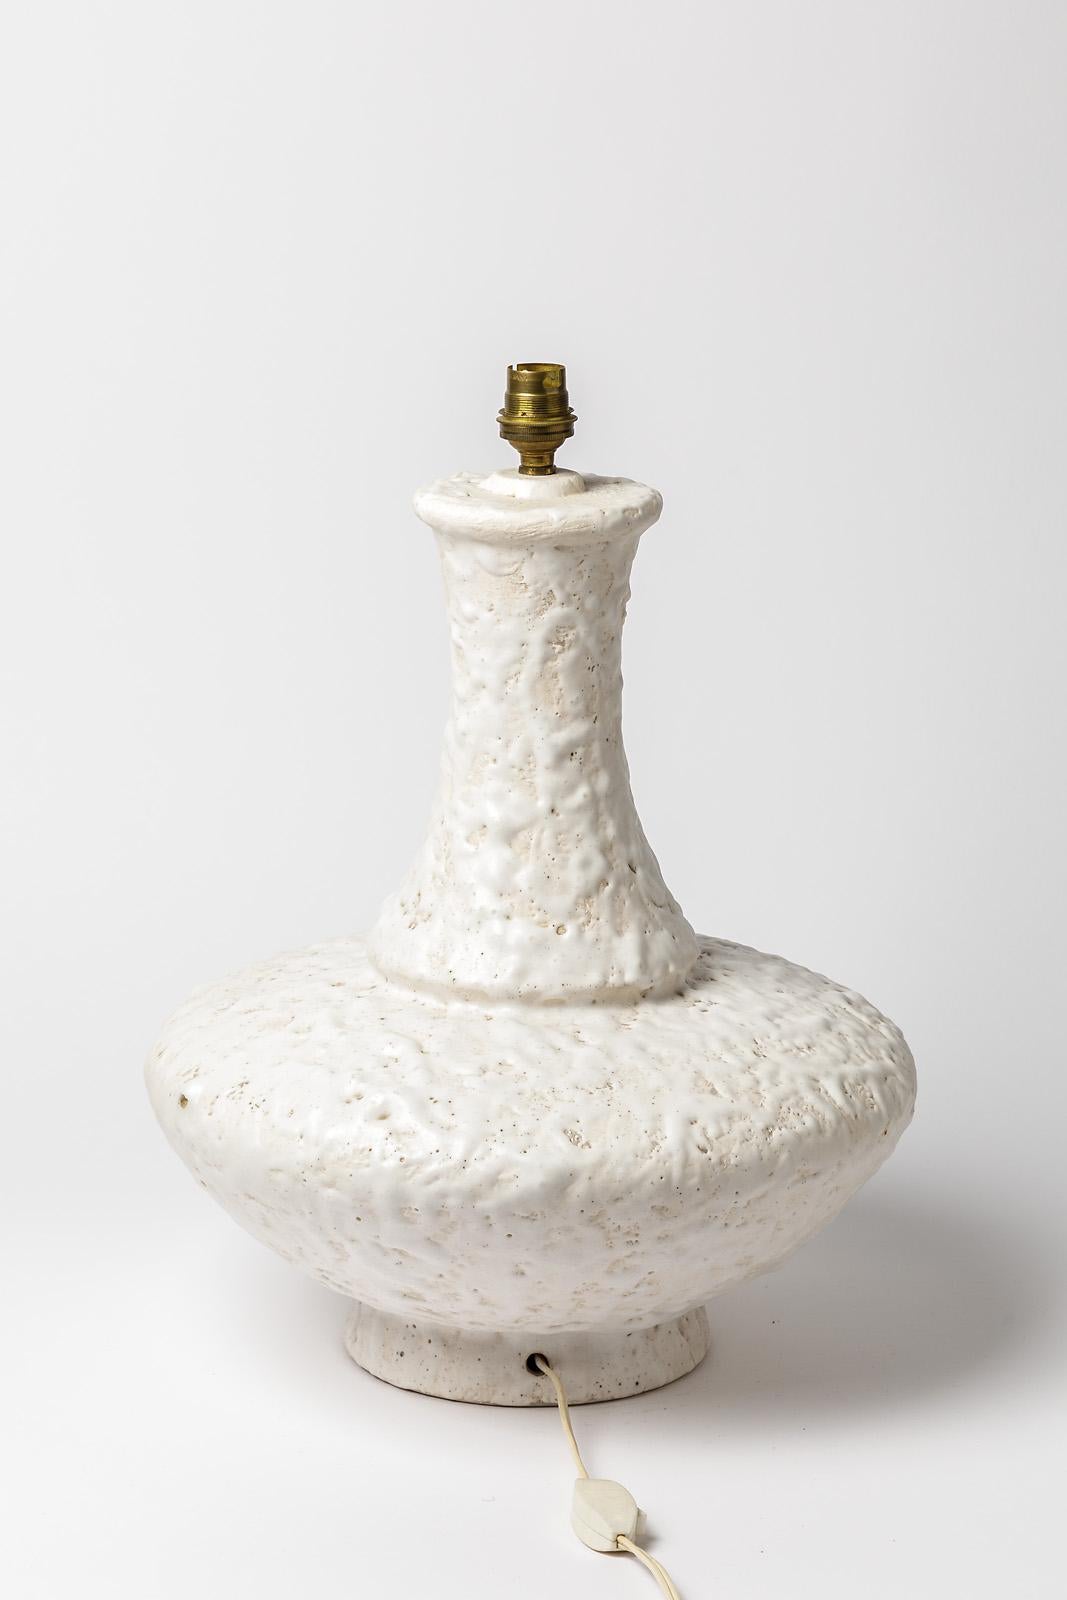 Französische Keramik-Tischlampe, um 1960

Elegante und große weiße Keramik-Tischlampe 

Abstrakte weiße Keramikglasurfarbe

Original perfekter Zustand

Abmessungen der Keramik: Höhe 39cm, groß 32cm
Mit elektrischer Anlage Höhe 45cm.